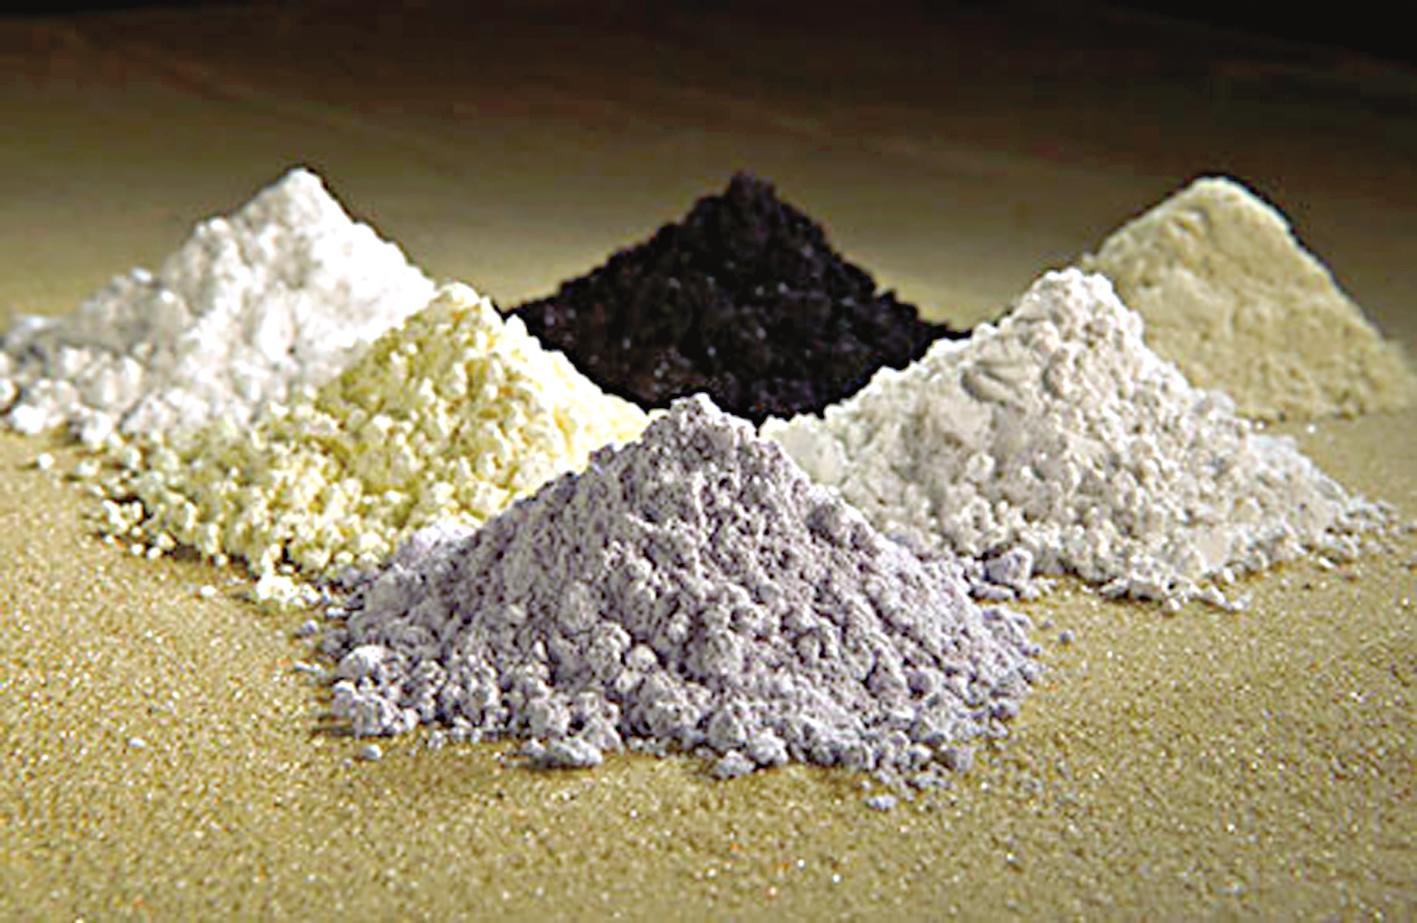 耀升材科技 供应高纯硝酸稀土盐 高纯醋酸稀土盐 高纯碳酸稀土盐 